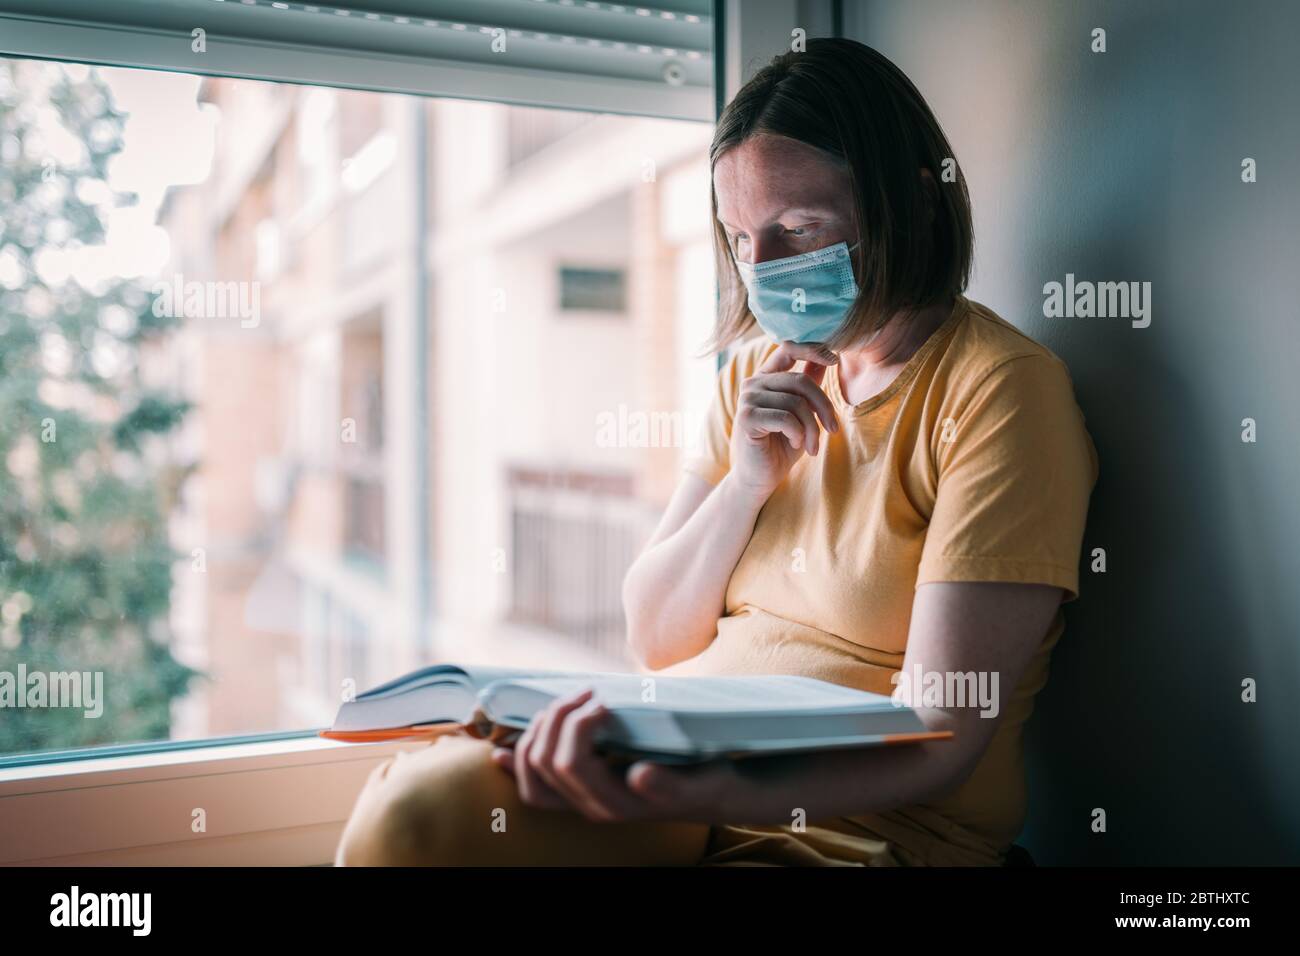 Frau in Selbstisolation Lesebuch am Fenster. Weibliche Person mit Gesichts-Schutz Atemmaske in der häuslichen Quarantäne. Stockfoto